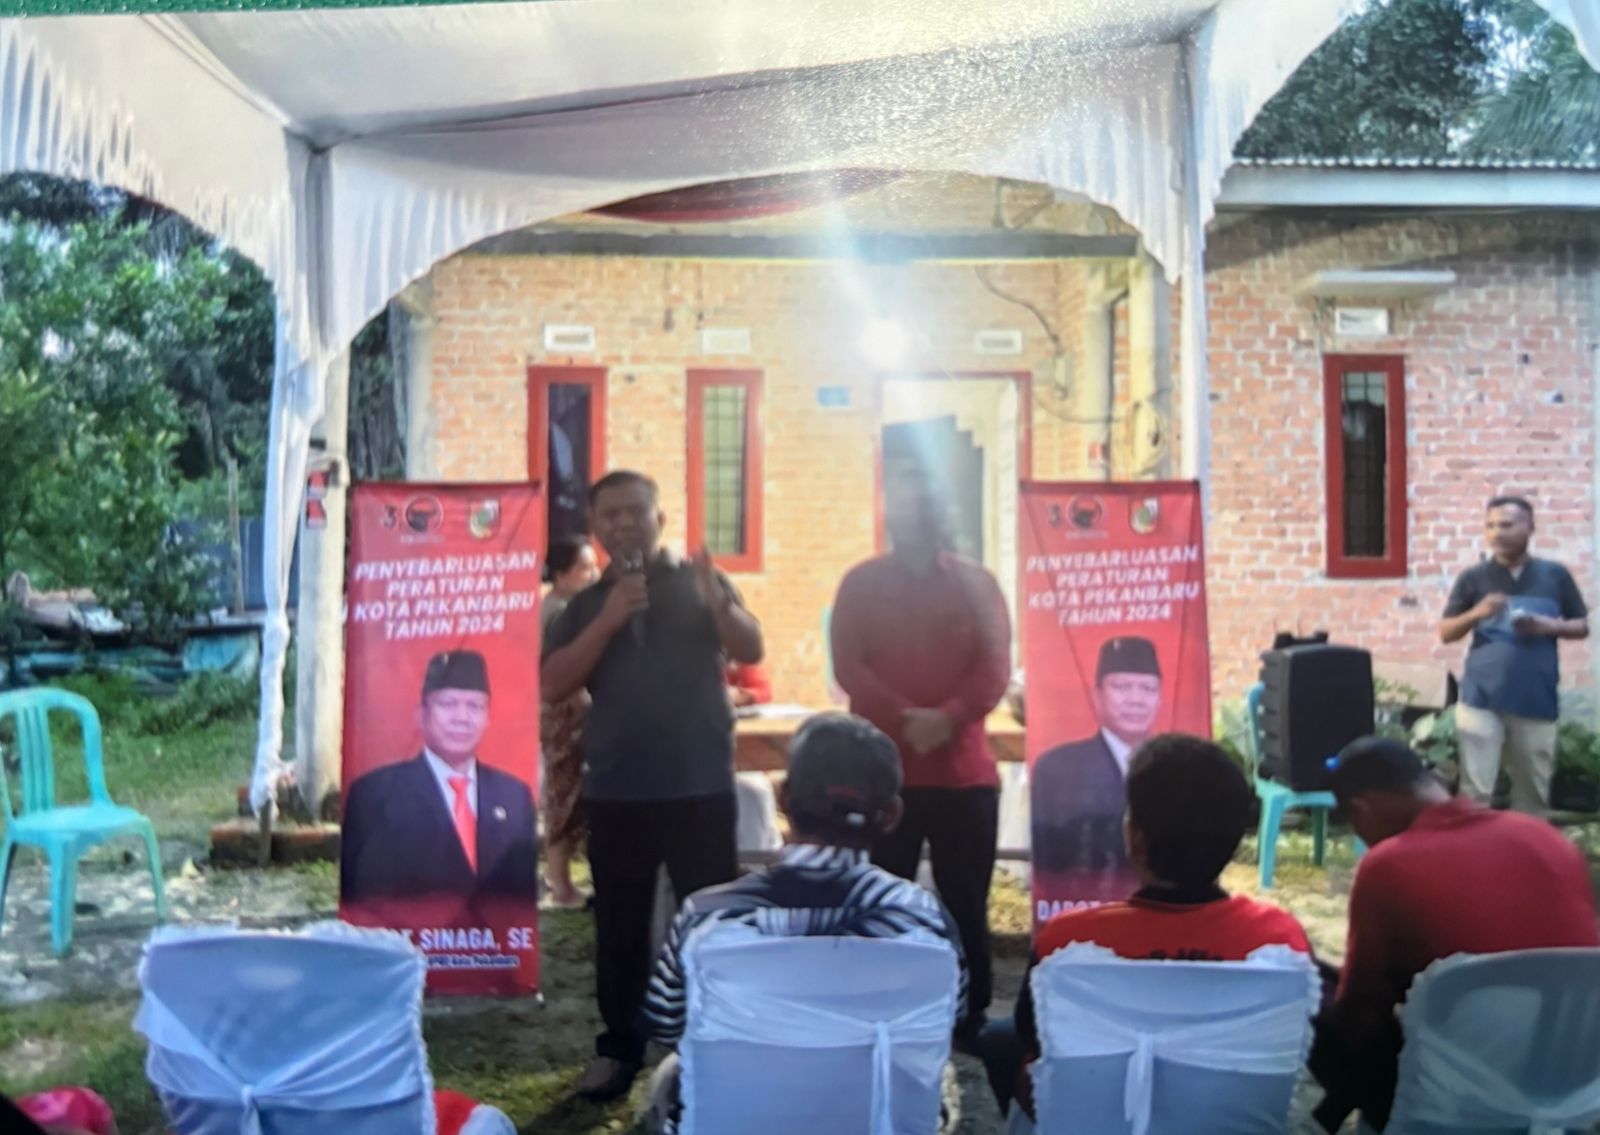 Anggota DPRD pekanbaru Dapot Sinaga saat menjelaskan Perda